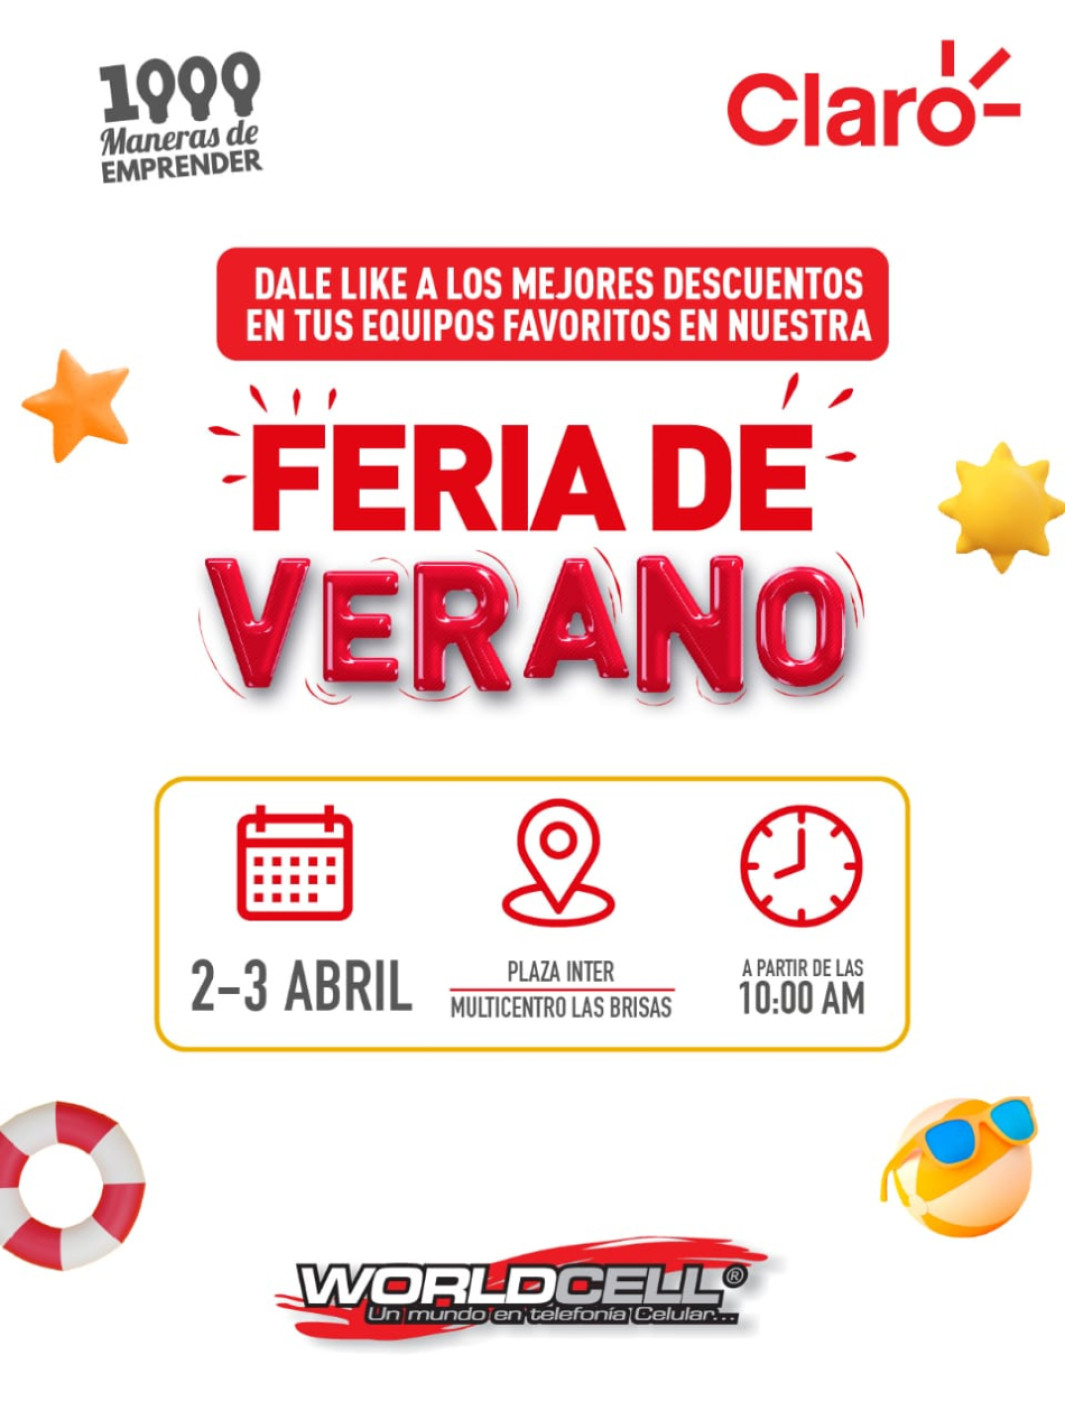 La Feria de Verano se realizará en Multicentro Las Brisas el 2 y 3 de abril, a partir de las 10:00 a.m.